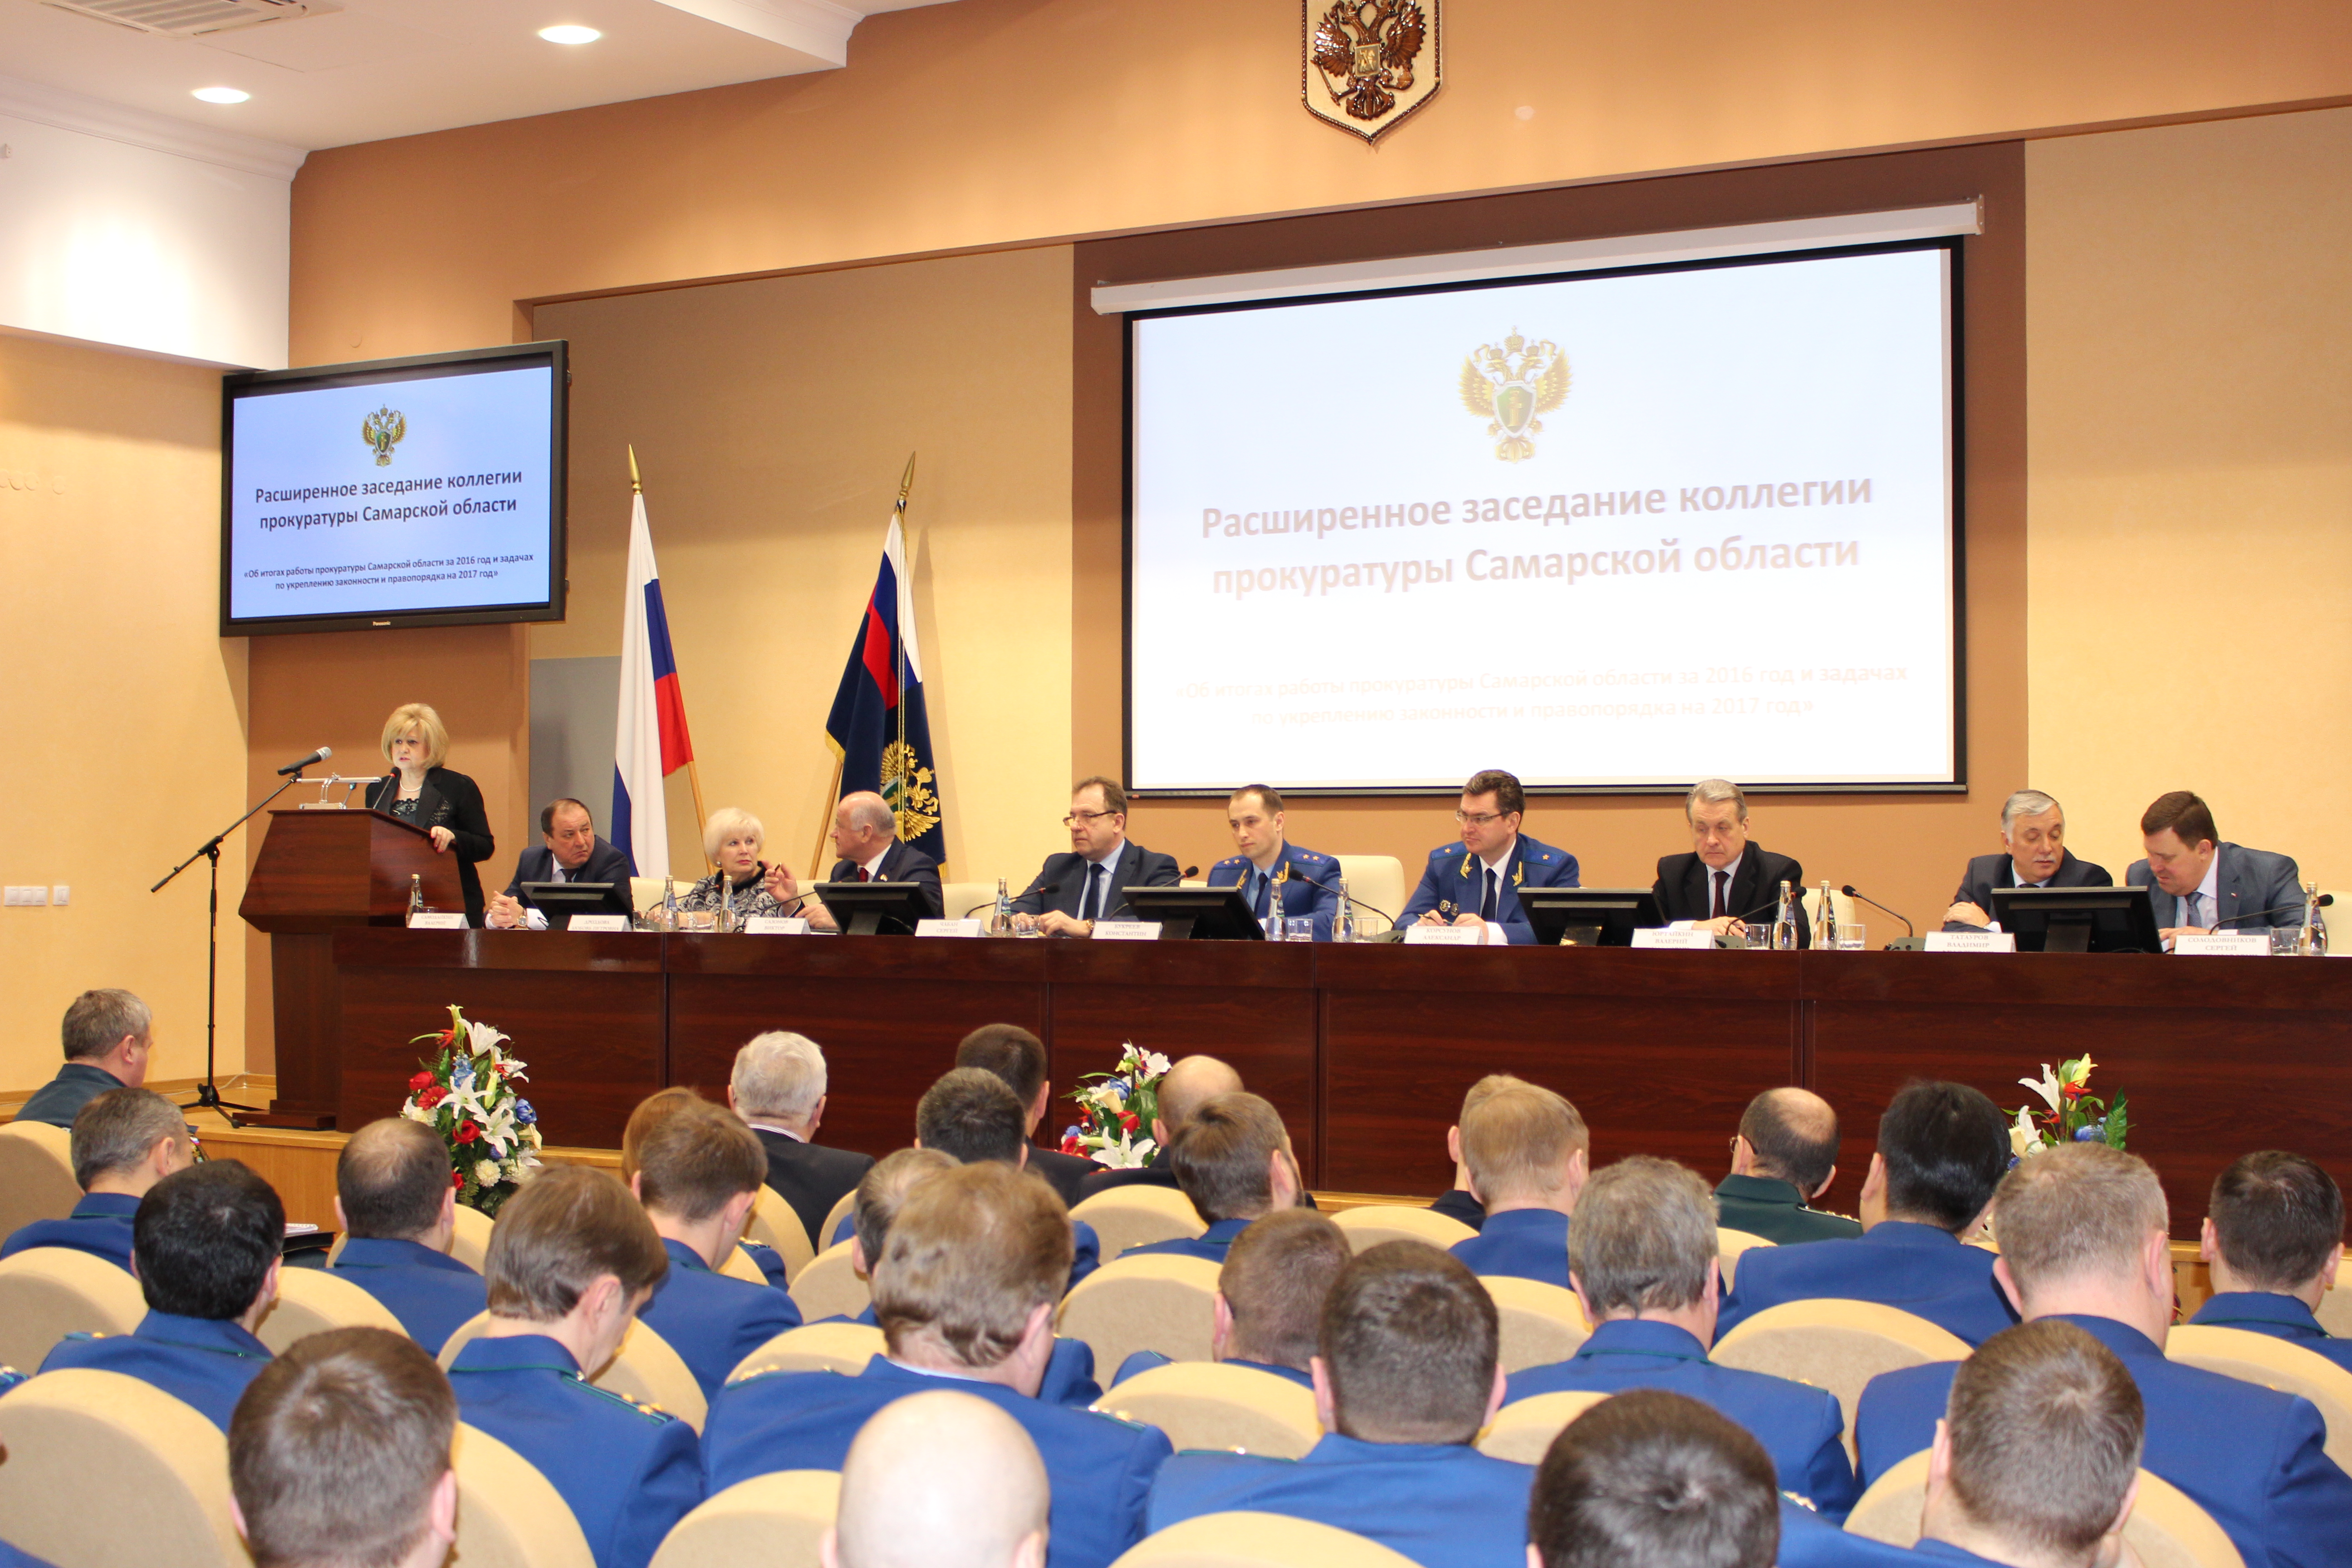 Расширенное заседание коллегии прокуратуры Самарской области